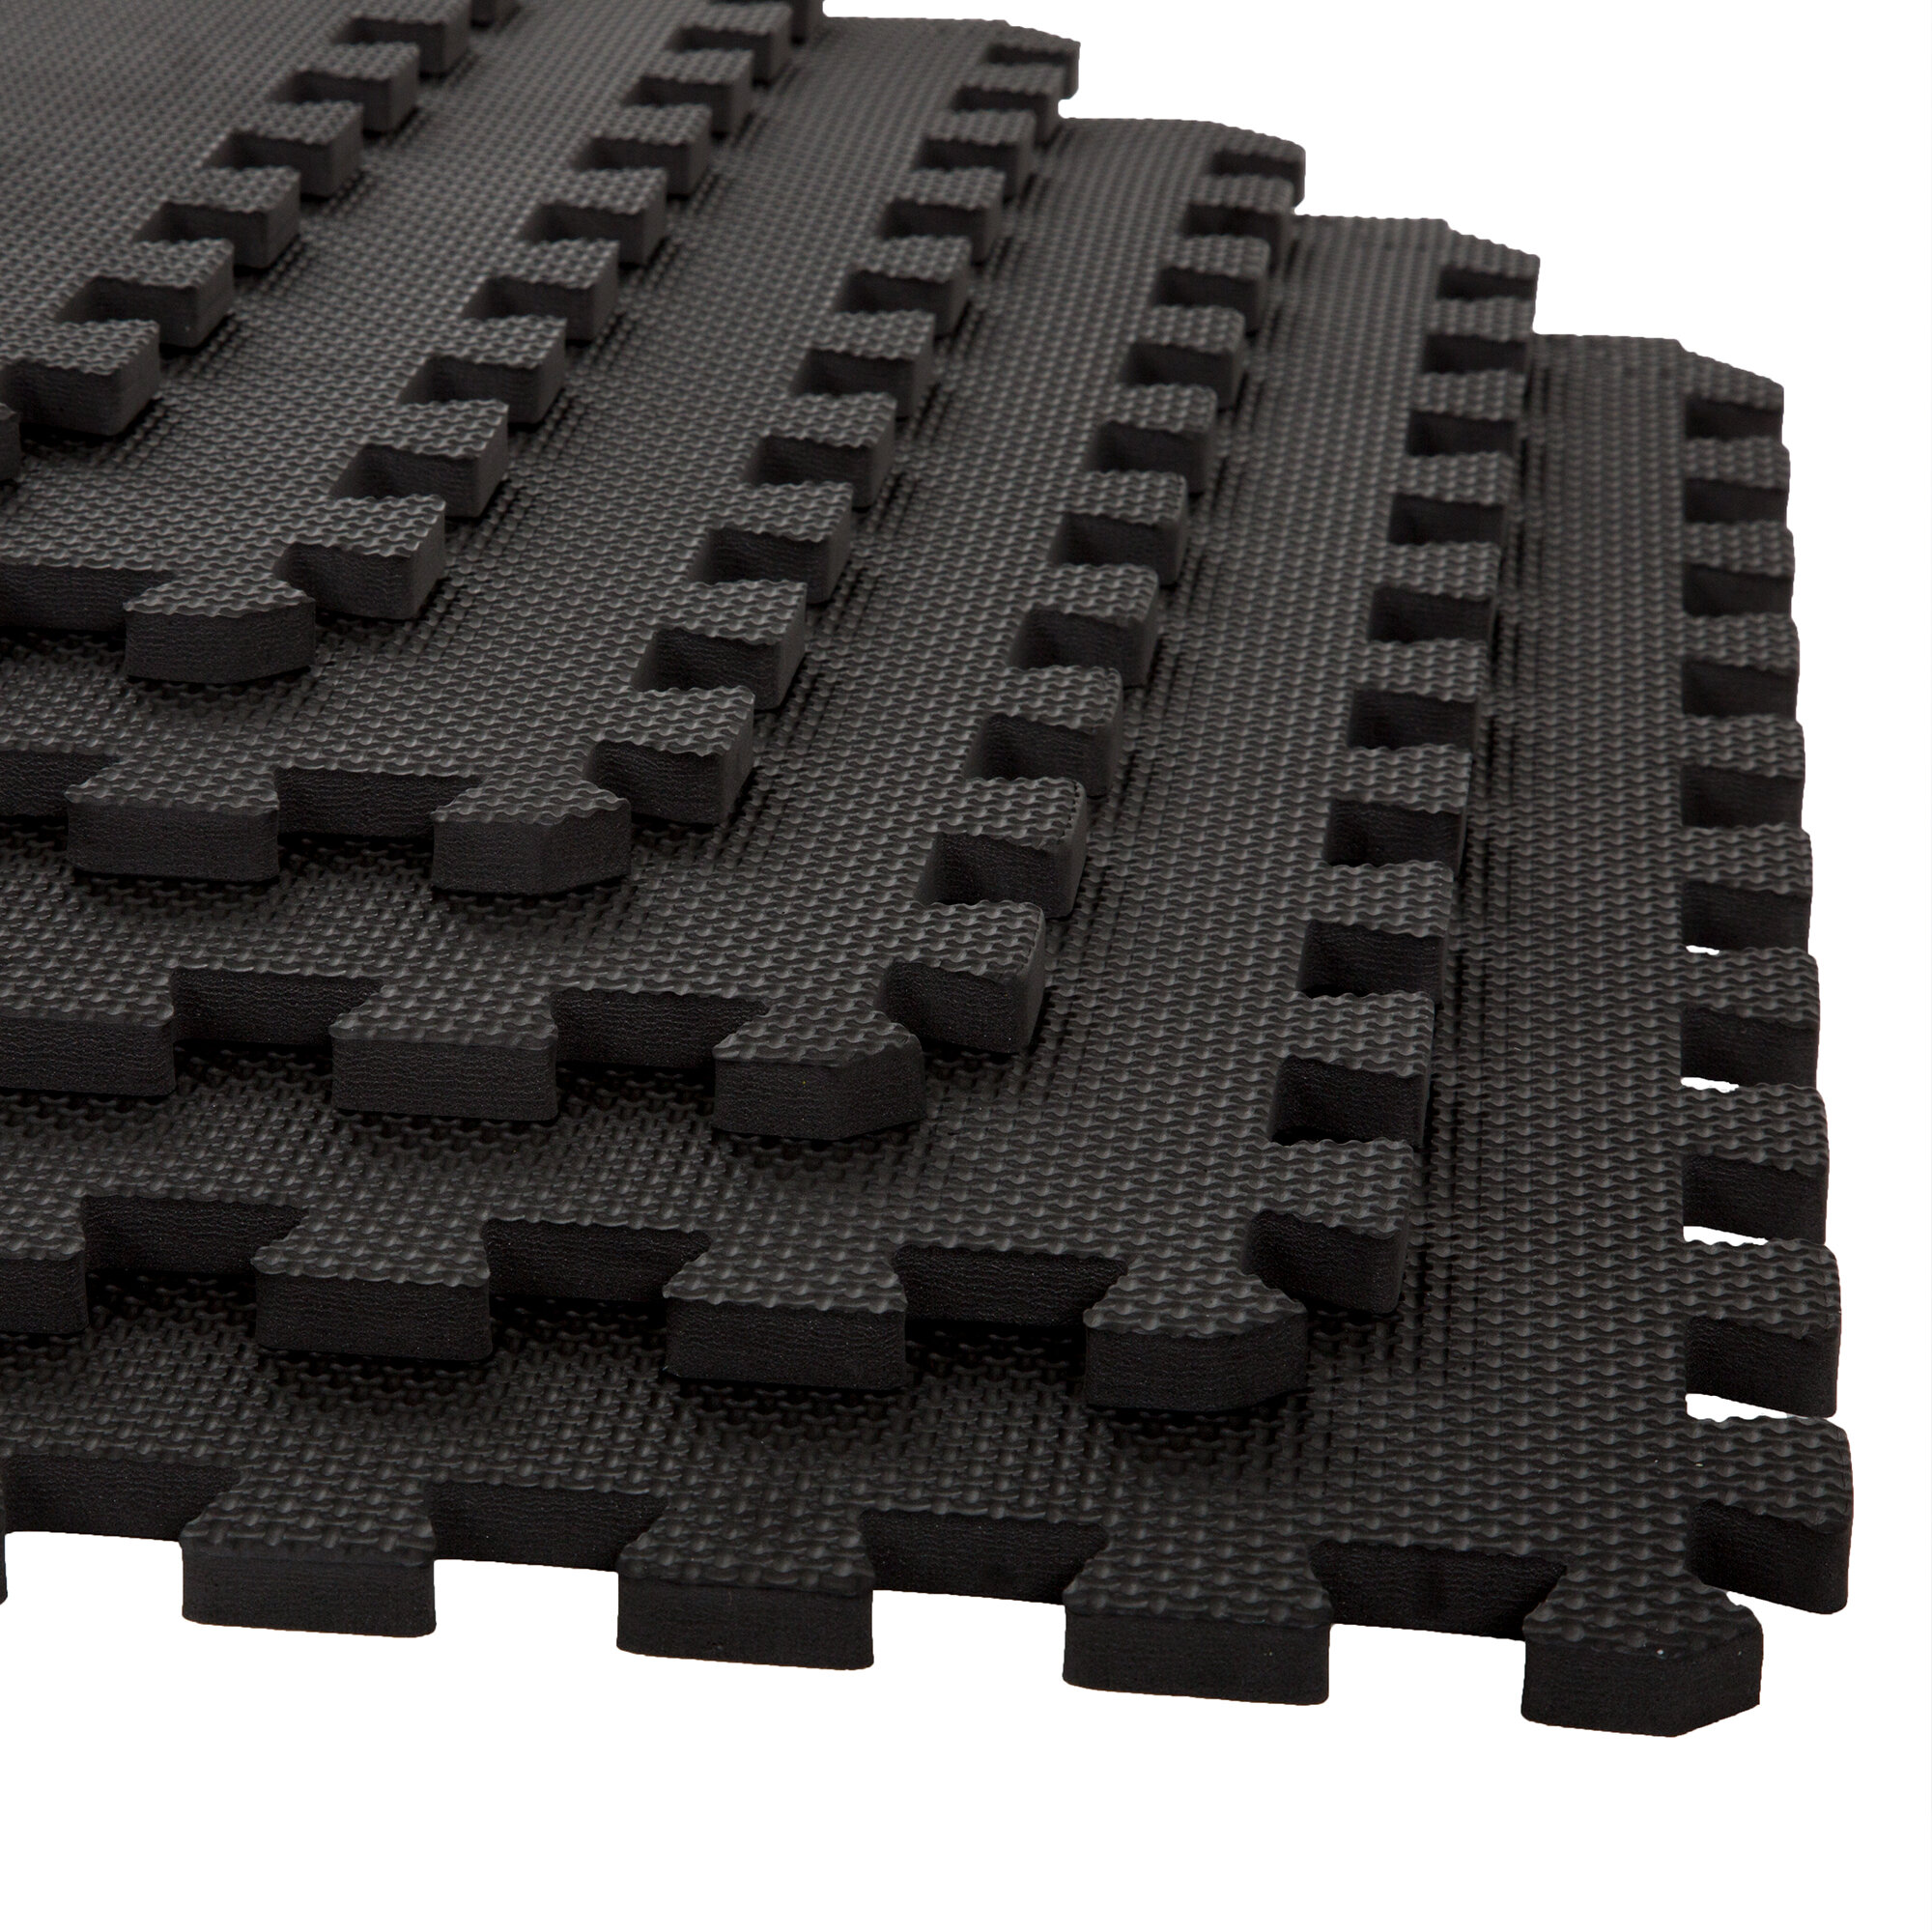 Stalwart 3 8 Foam Tiles In Black Reviews Wayfair